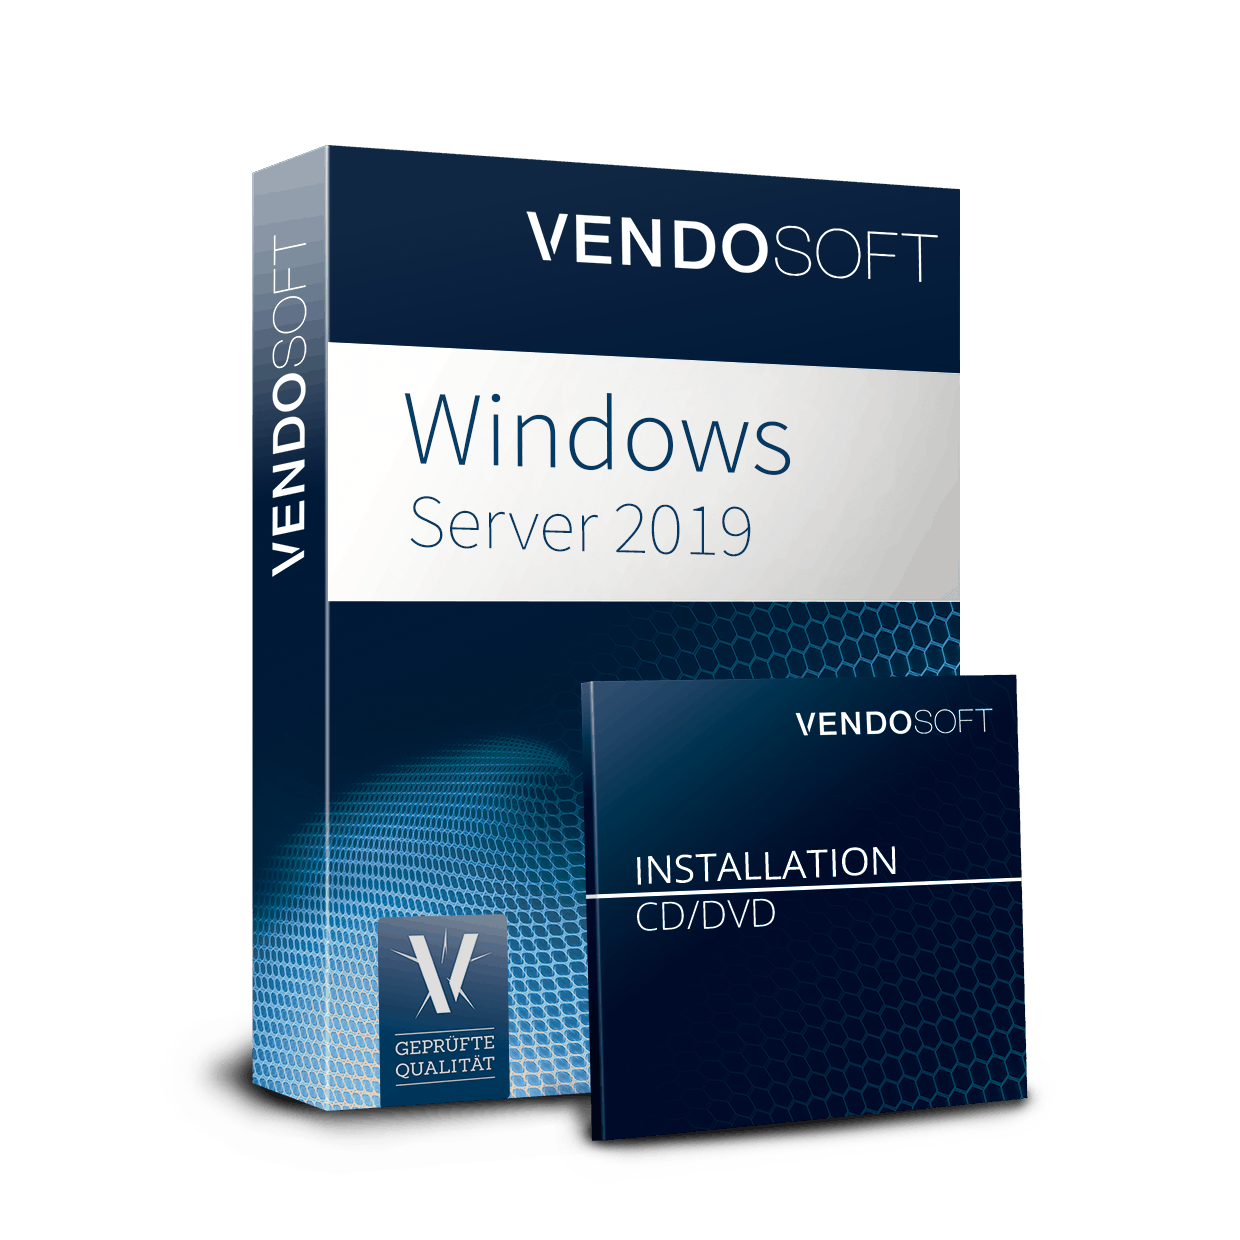 Microsoft Windows Server 2019 Datacenter 16 Core Neu Vendosoft 2318